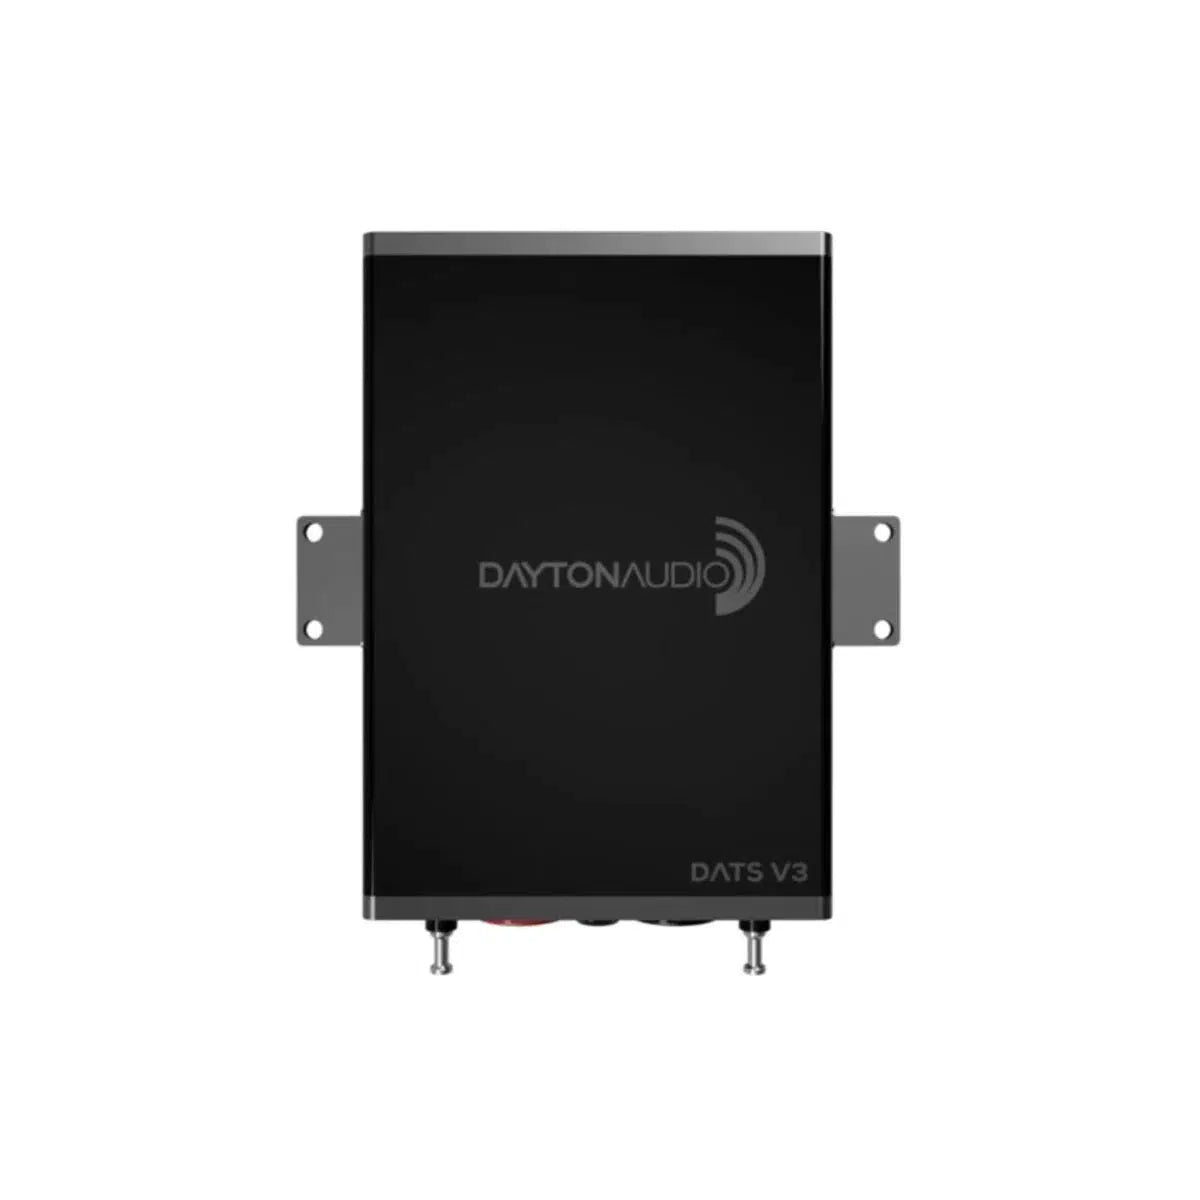 Dispositivo de medición Dayton Audio-DATS V3-Masori.de